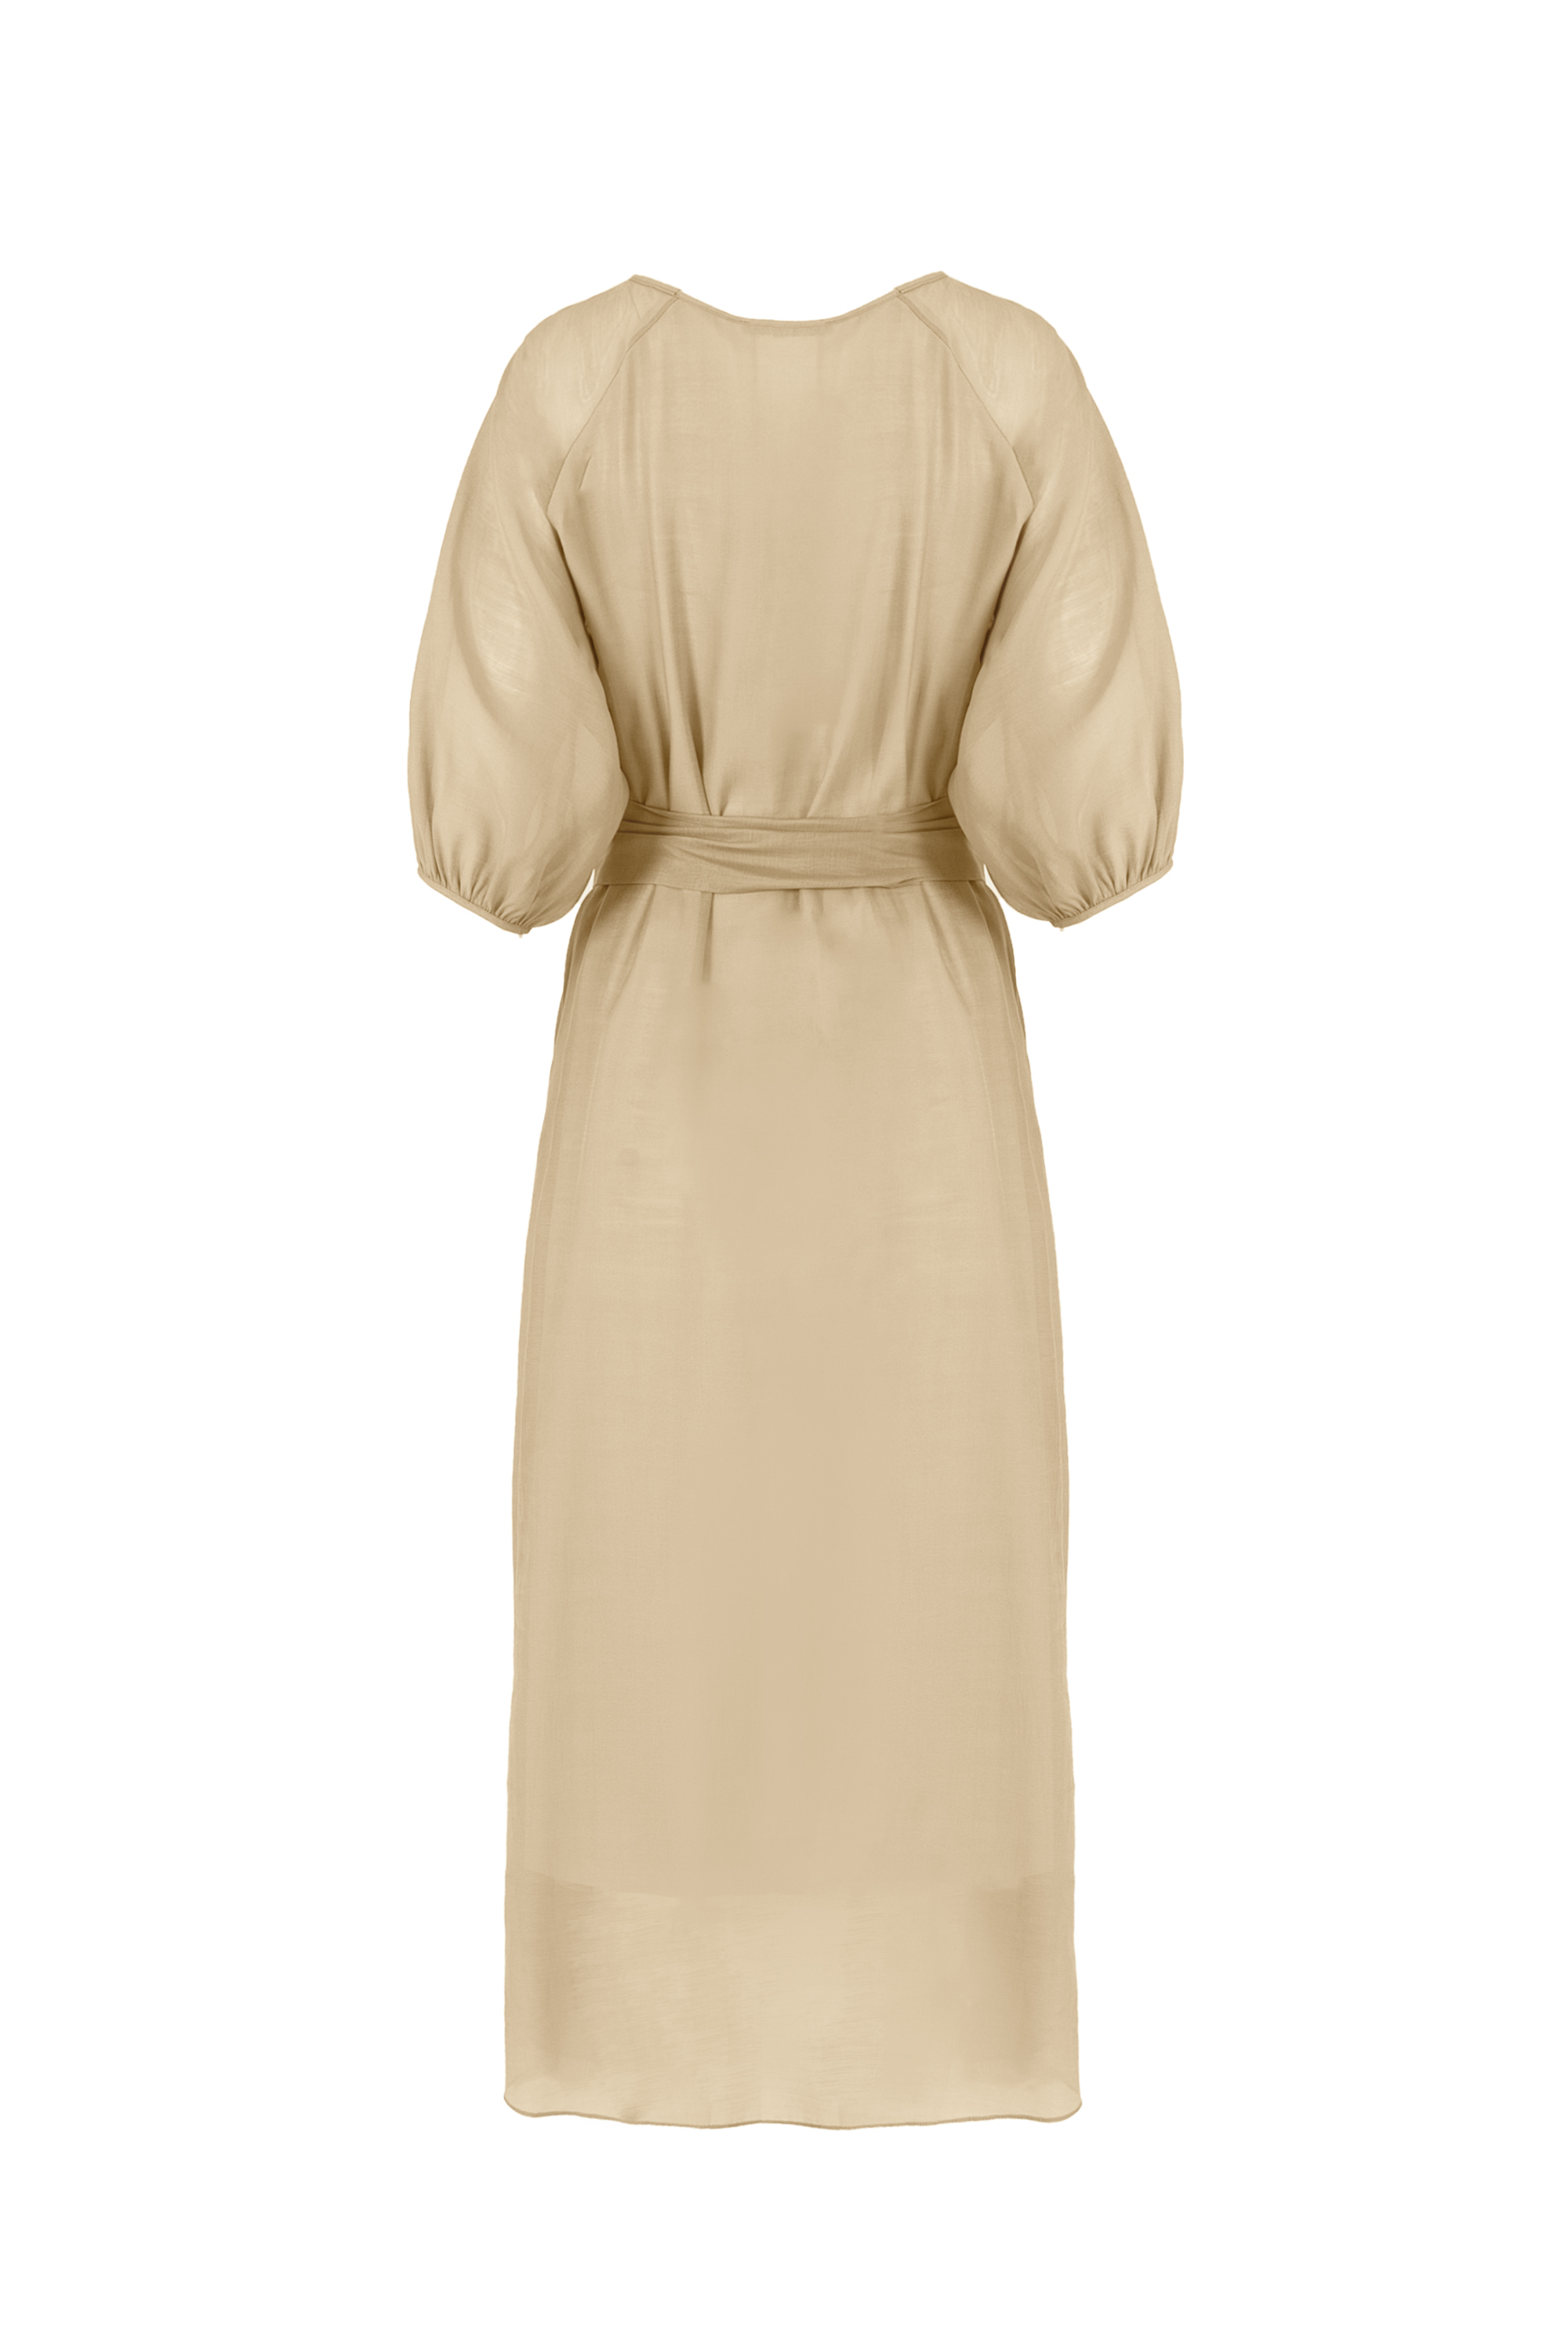 Платье женское 5К-12556-1